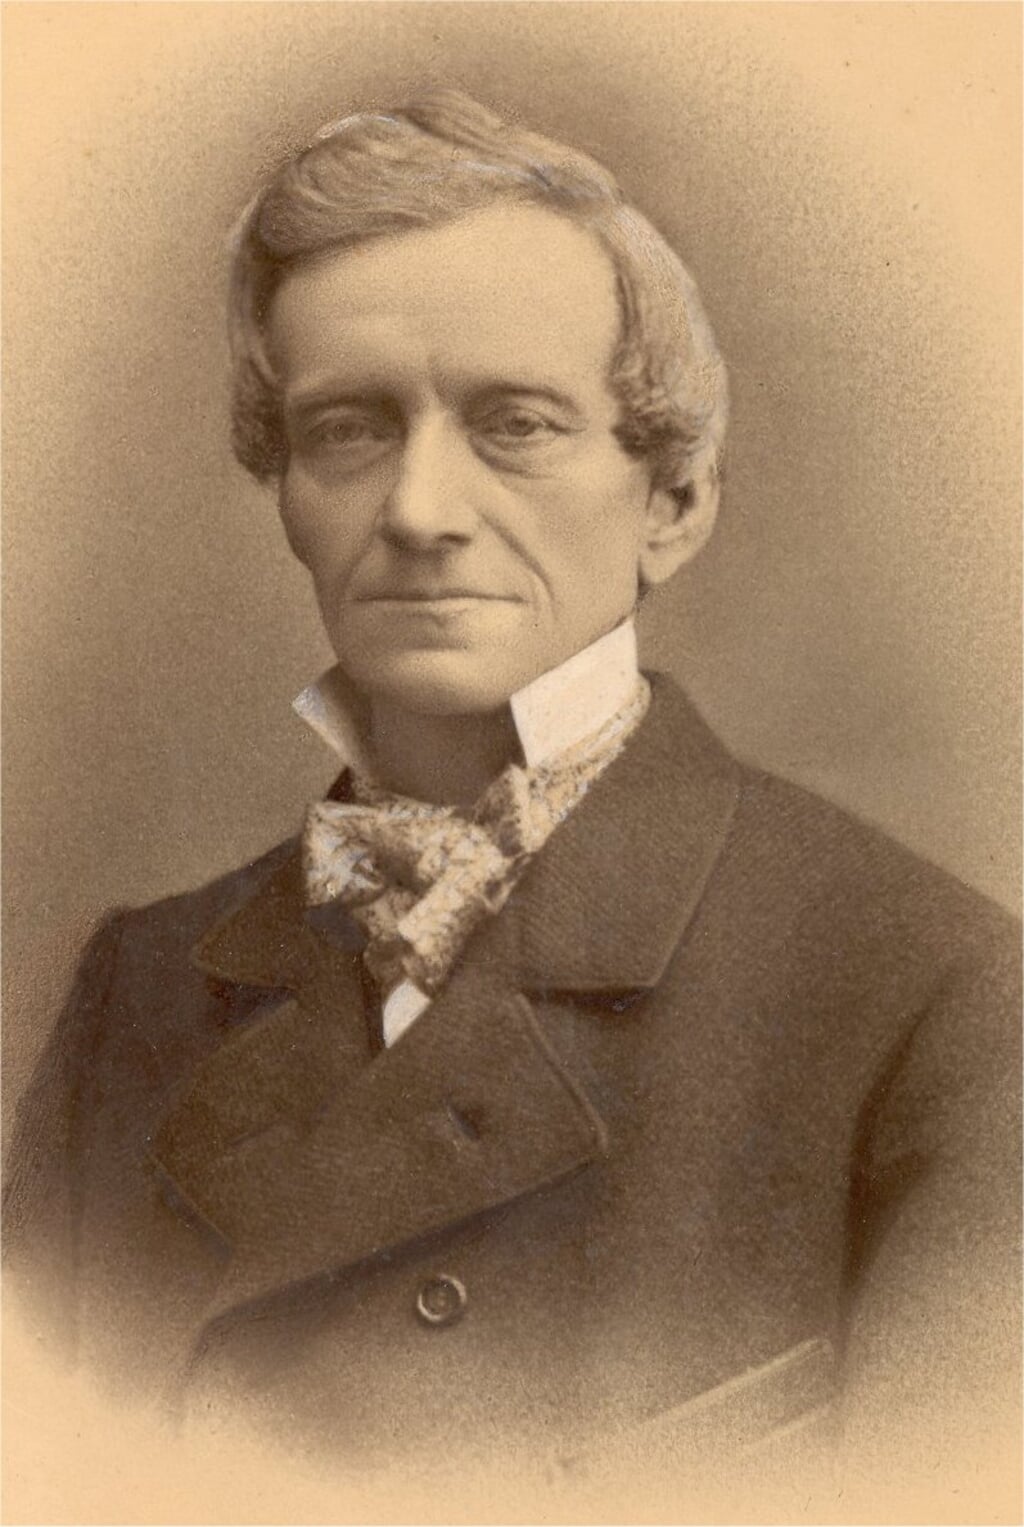 Gerrit Boonstra – zelf noemde hij zich naar zijn vader Gerrit Wytze – kwam in augustus 1871 op uitnodiging naar Barneveld om daar met de uitgave van een weekblad te starten.